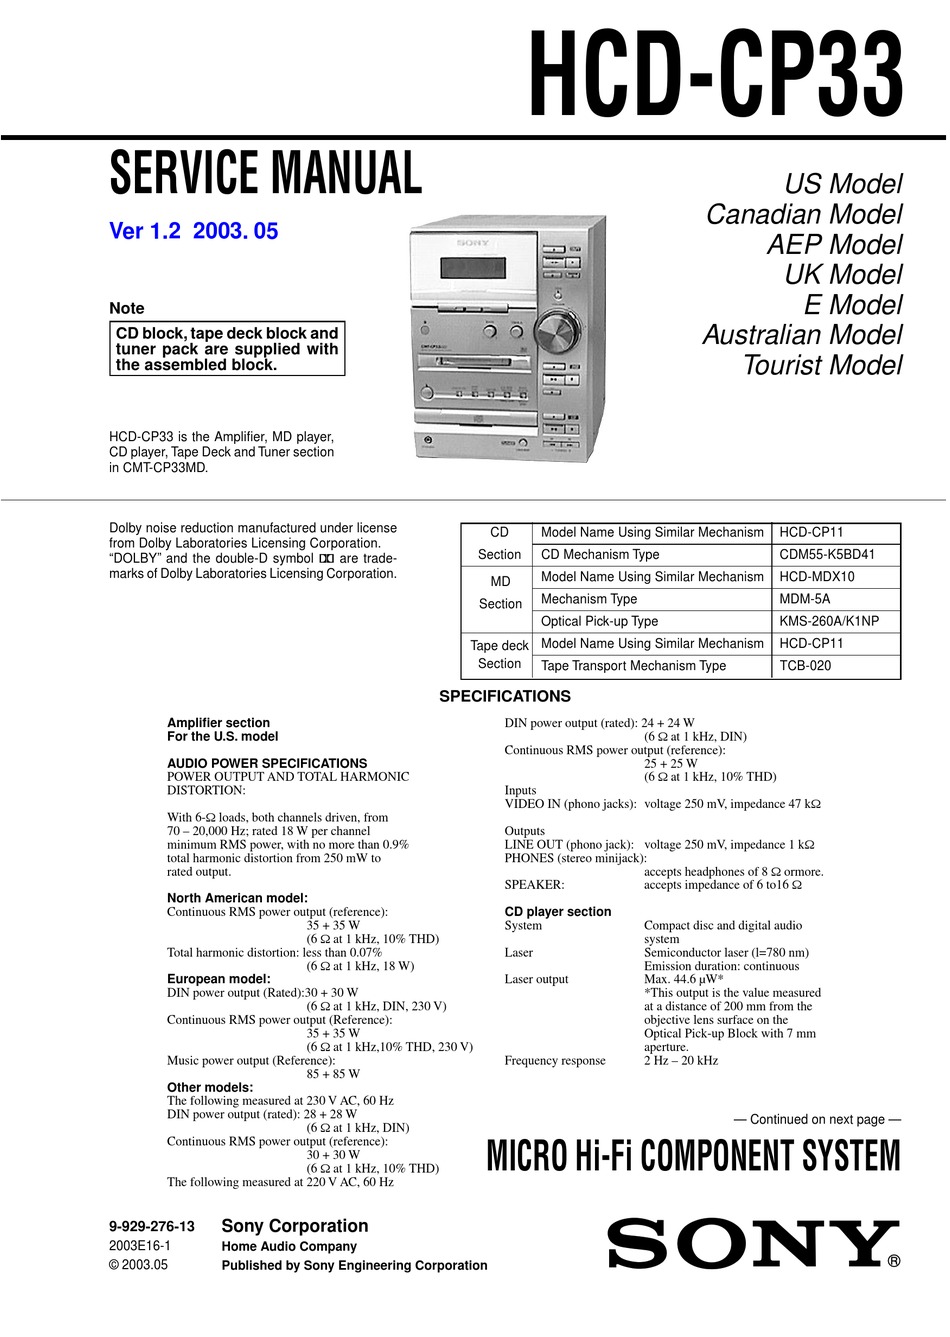 CMT-CP333 Riemen-Set Für CD Player SONY HCD-CP333 